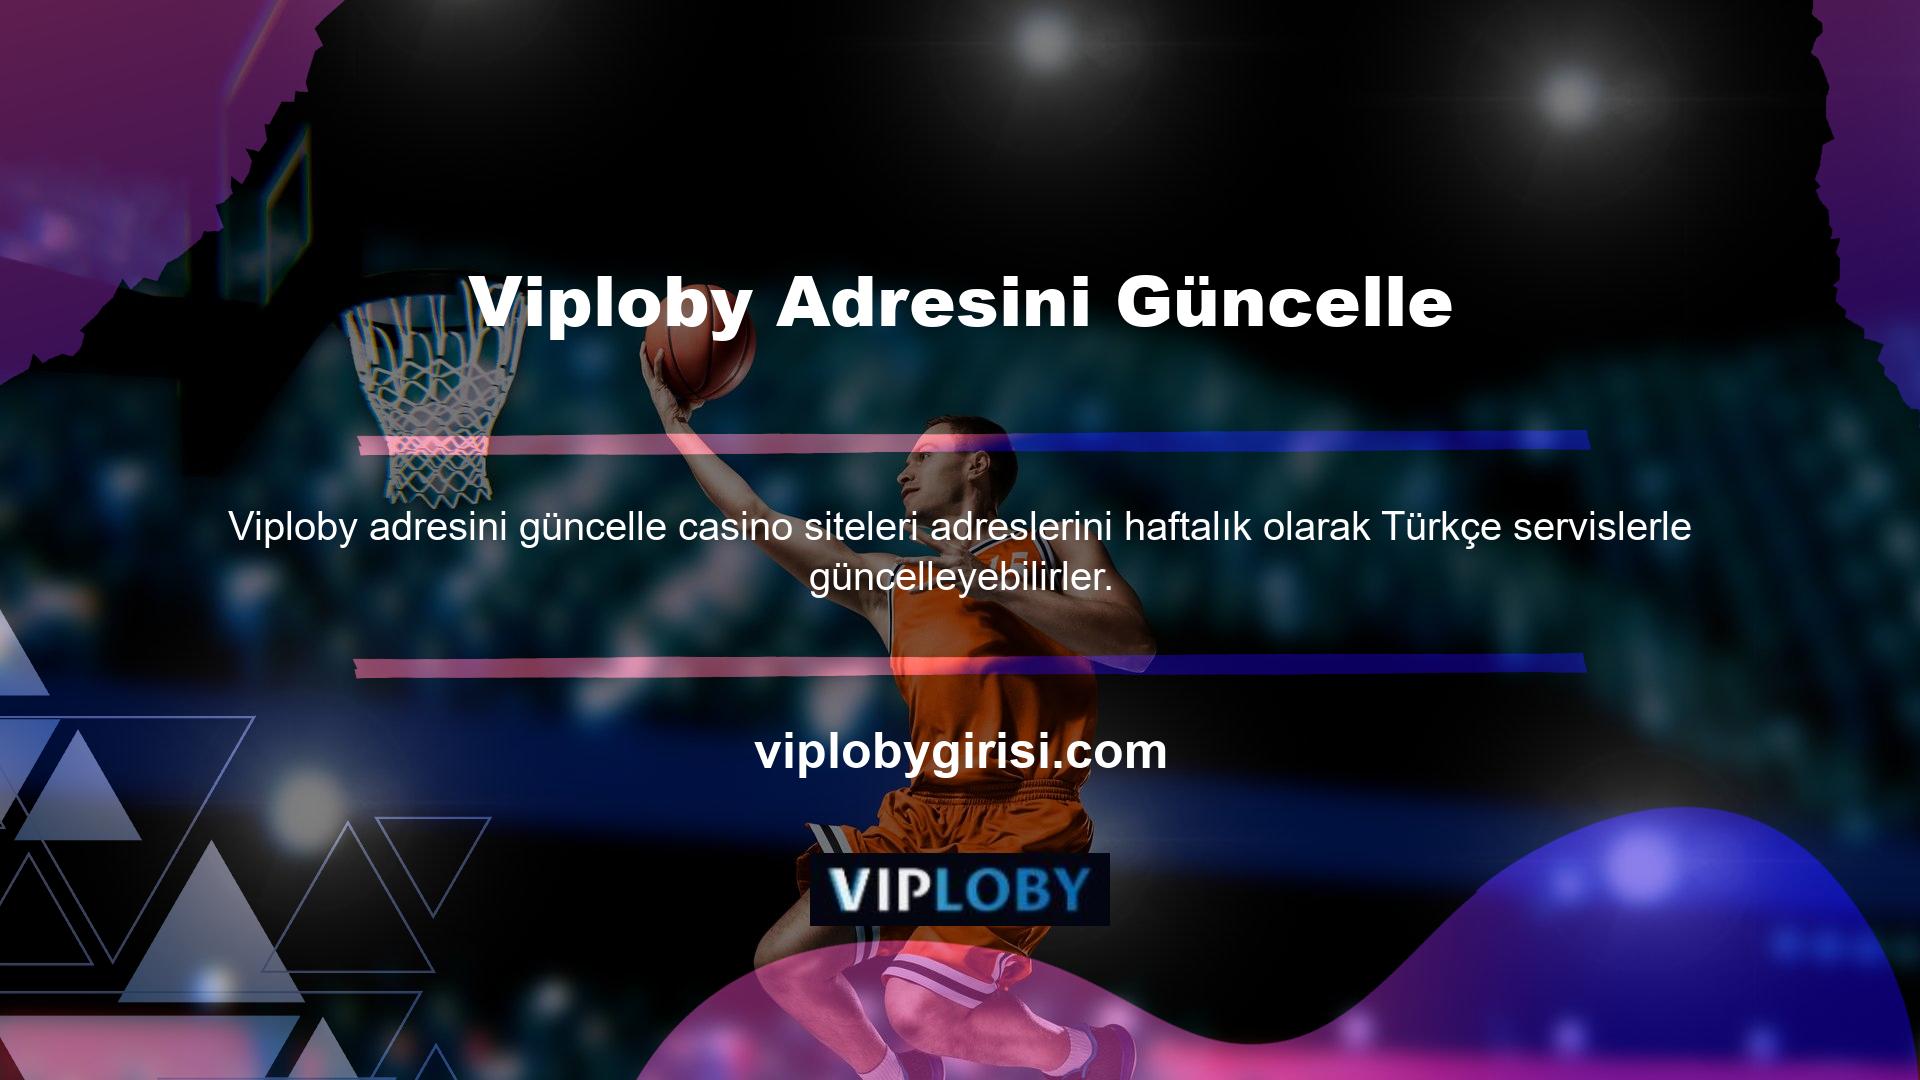 Türk üyelerin kesintisiz erişimini Viploby adresini güncelle sağlamak için adres güncellenirken, site ve kullanıcı hesaplarında herhangi bir değişiklik yapılmamıştır